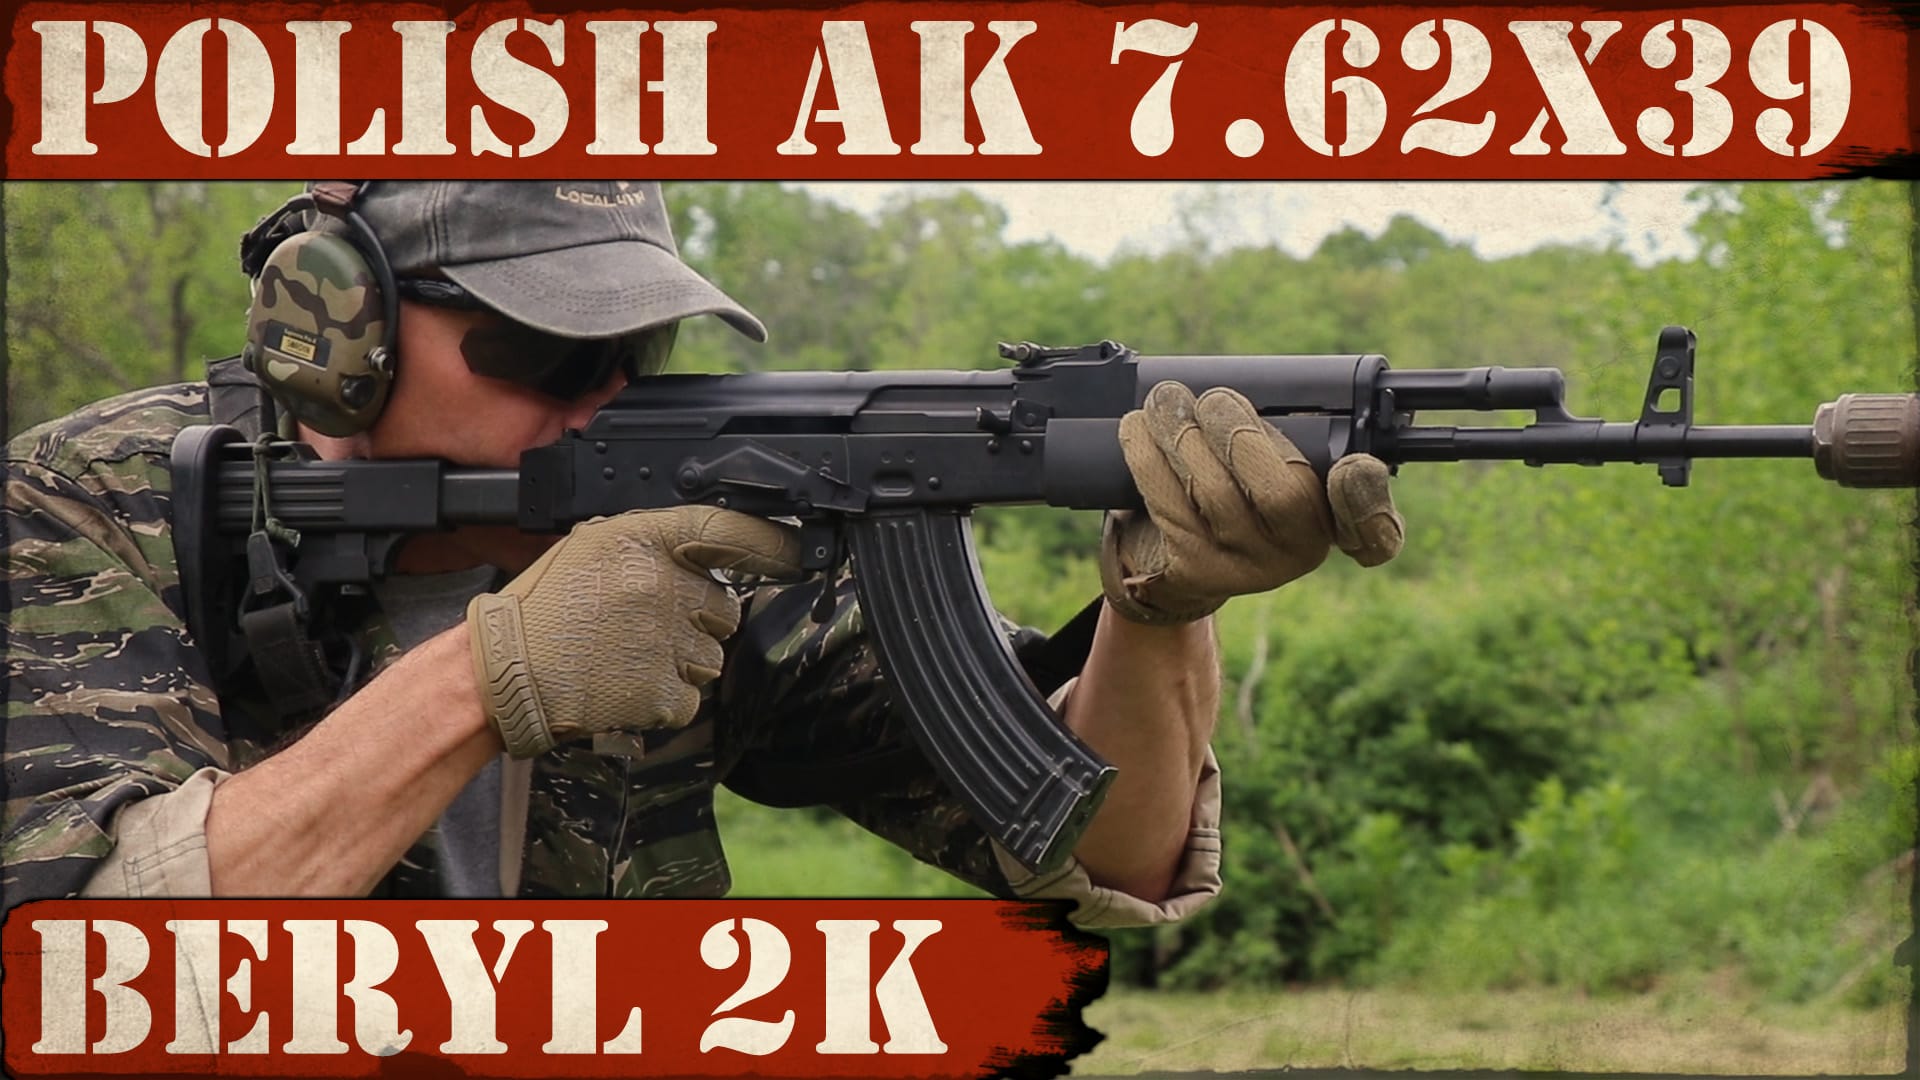 Polish AK 7.62×39 – Beryl 2k!